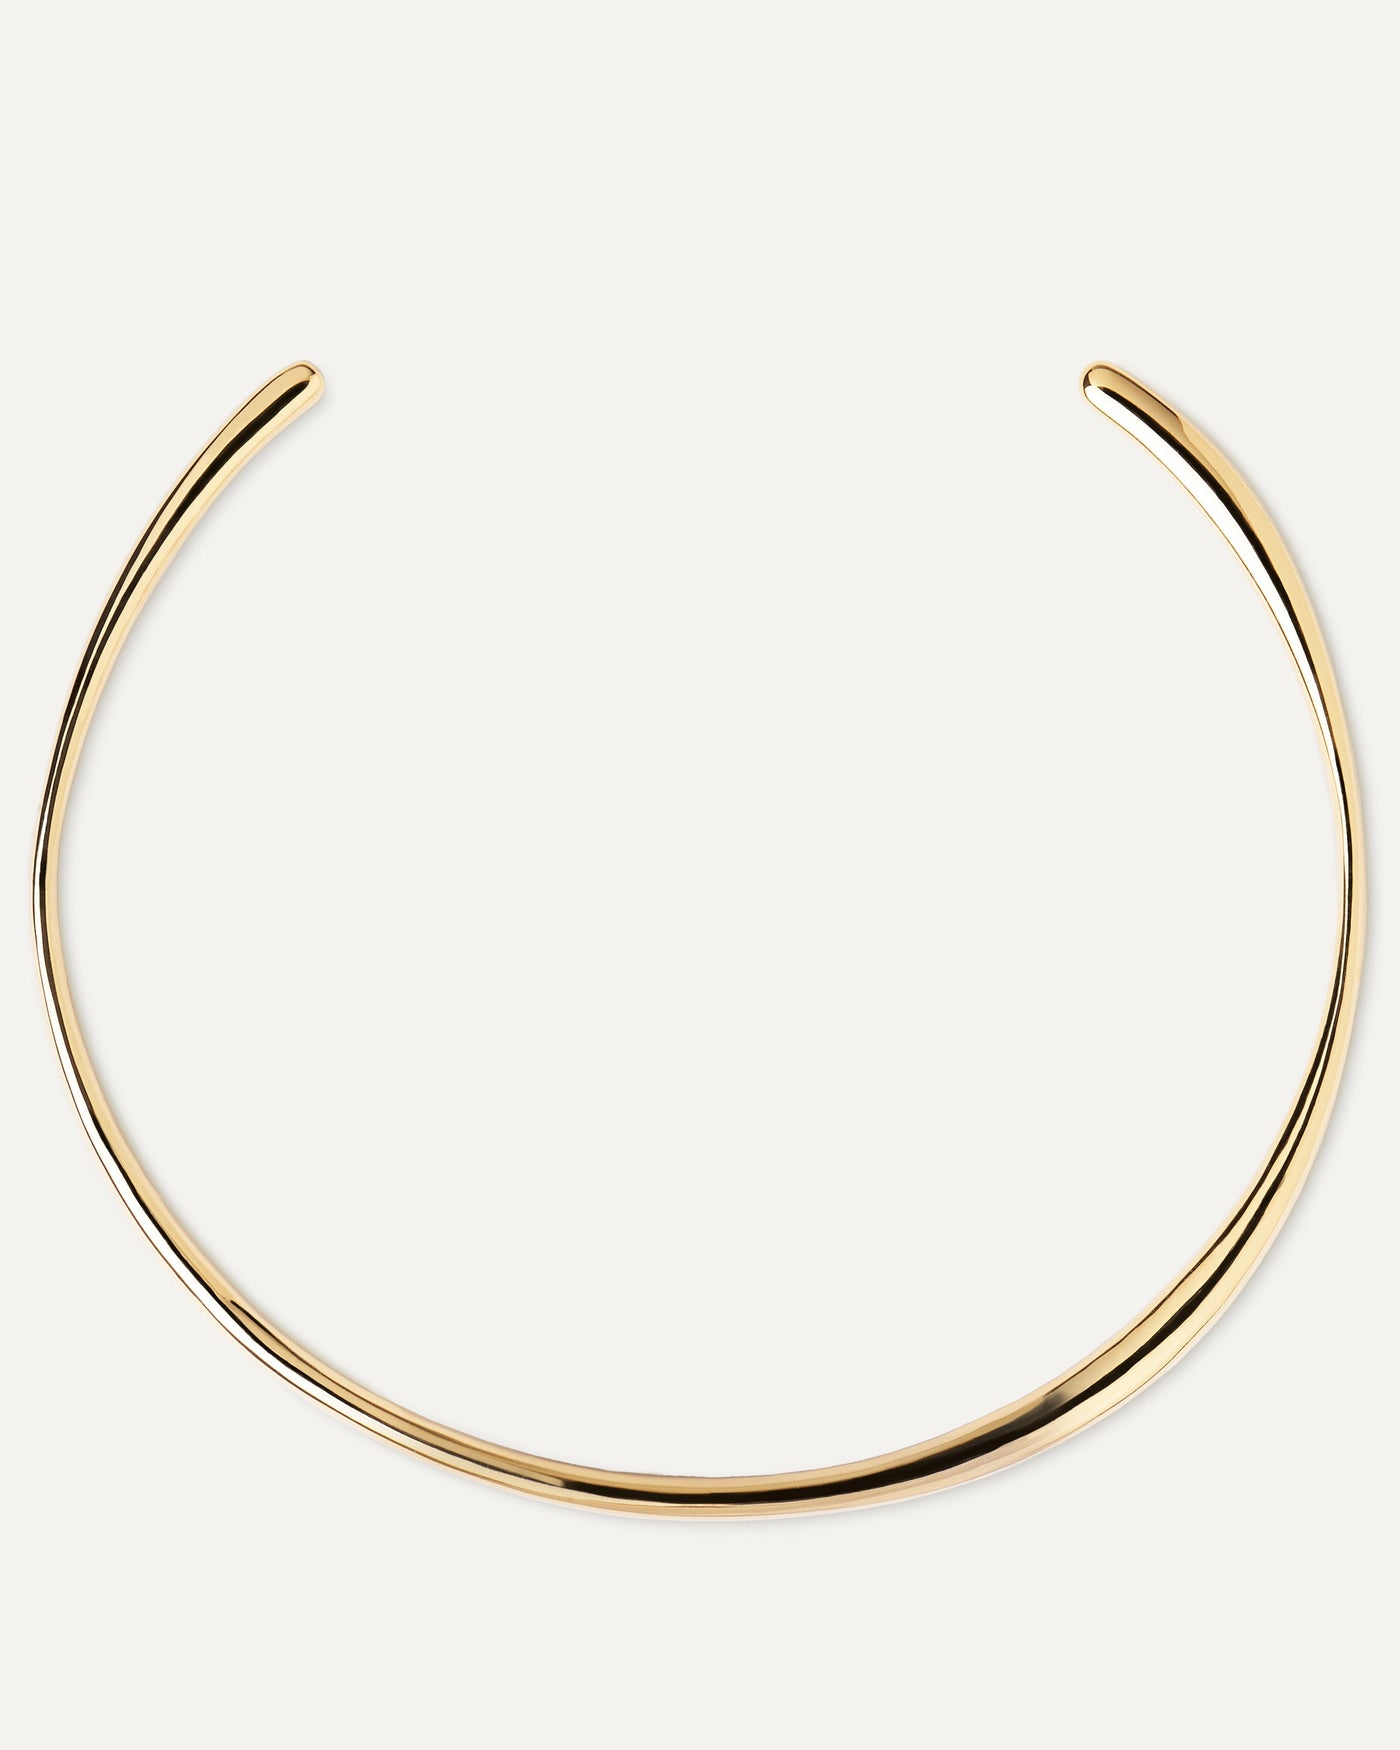 Pirouette Halskette. Goldverzerrte Silber-Chocker-Halskette mit rund starrer Form. Erhalten Sie die neuesten Produkte von PDPAOLA. Geben Sie Ihre Bestellung sicher auf und erhalten Sie diesen Bestseller.